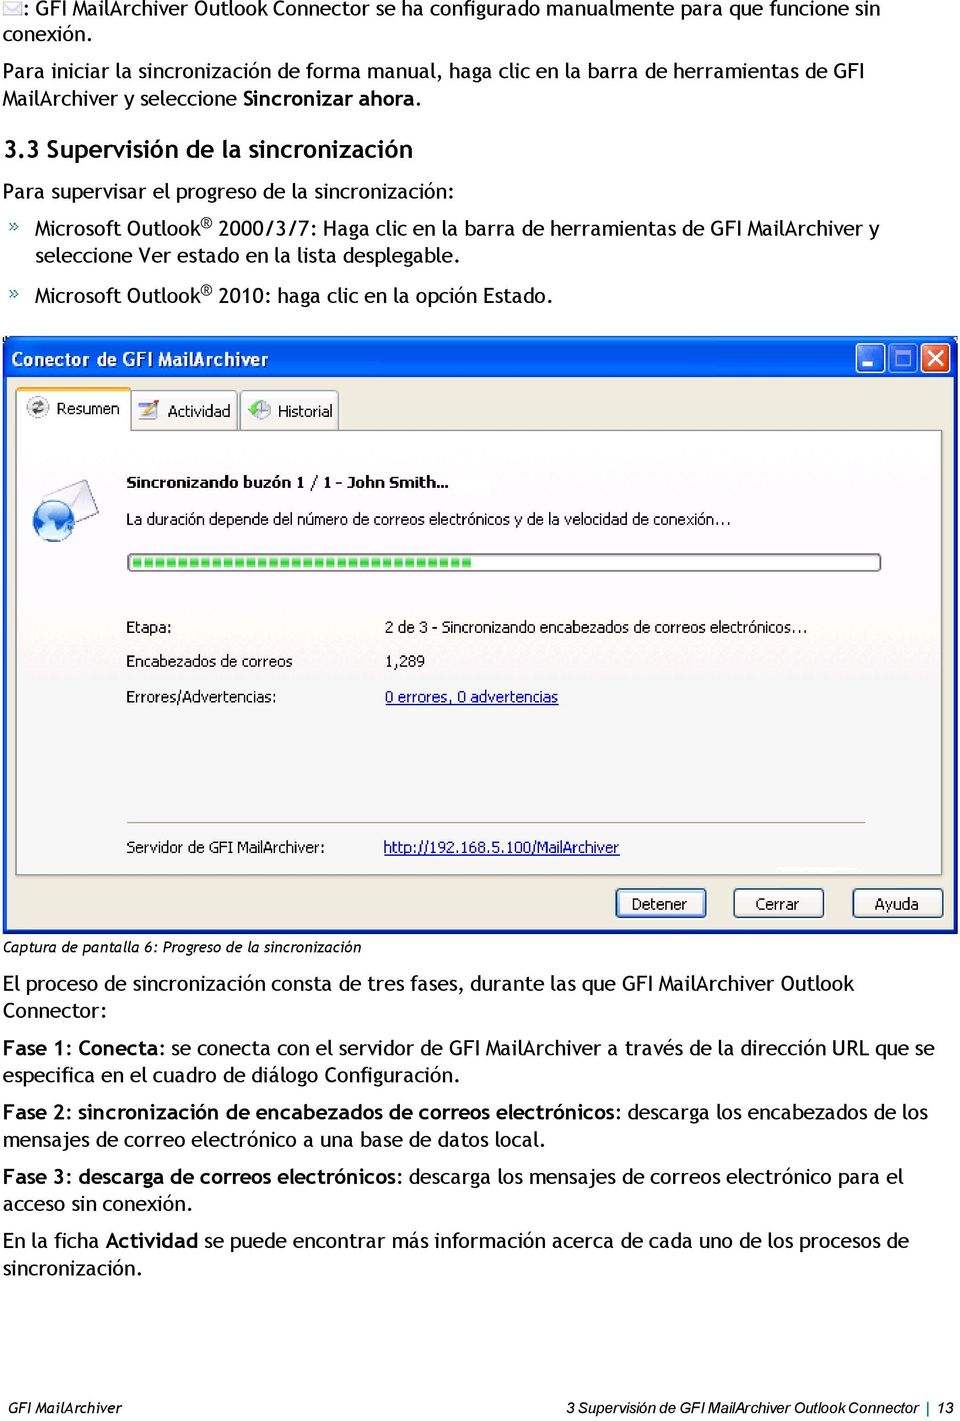 3 Supervisión de la sincronización Para supervisar el progreso de la sincronización: Microsoft Outlook 2000/3/7: Haga clic en la barra de herramientas de GFI MailArchiver y seleccione Ver estado en